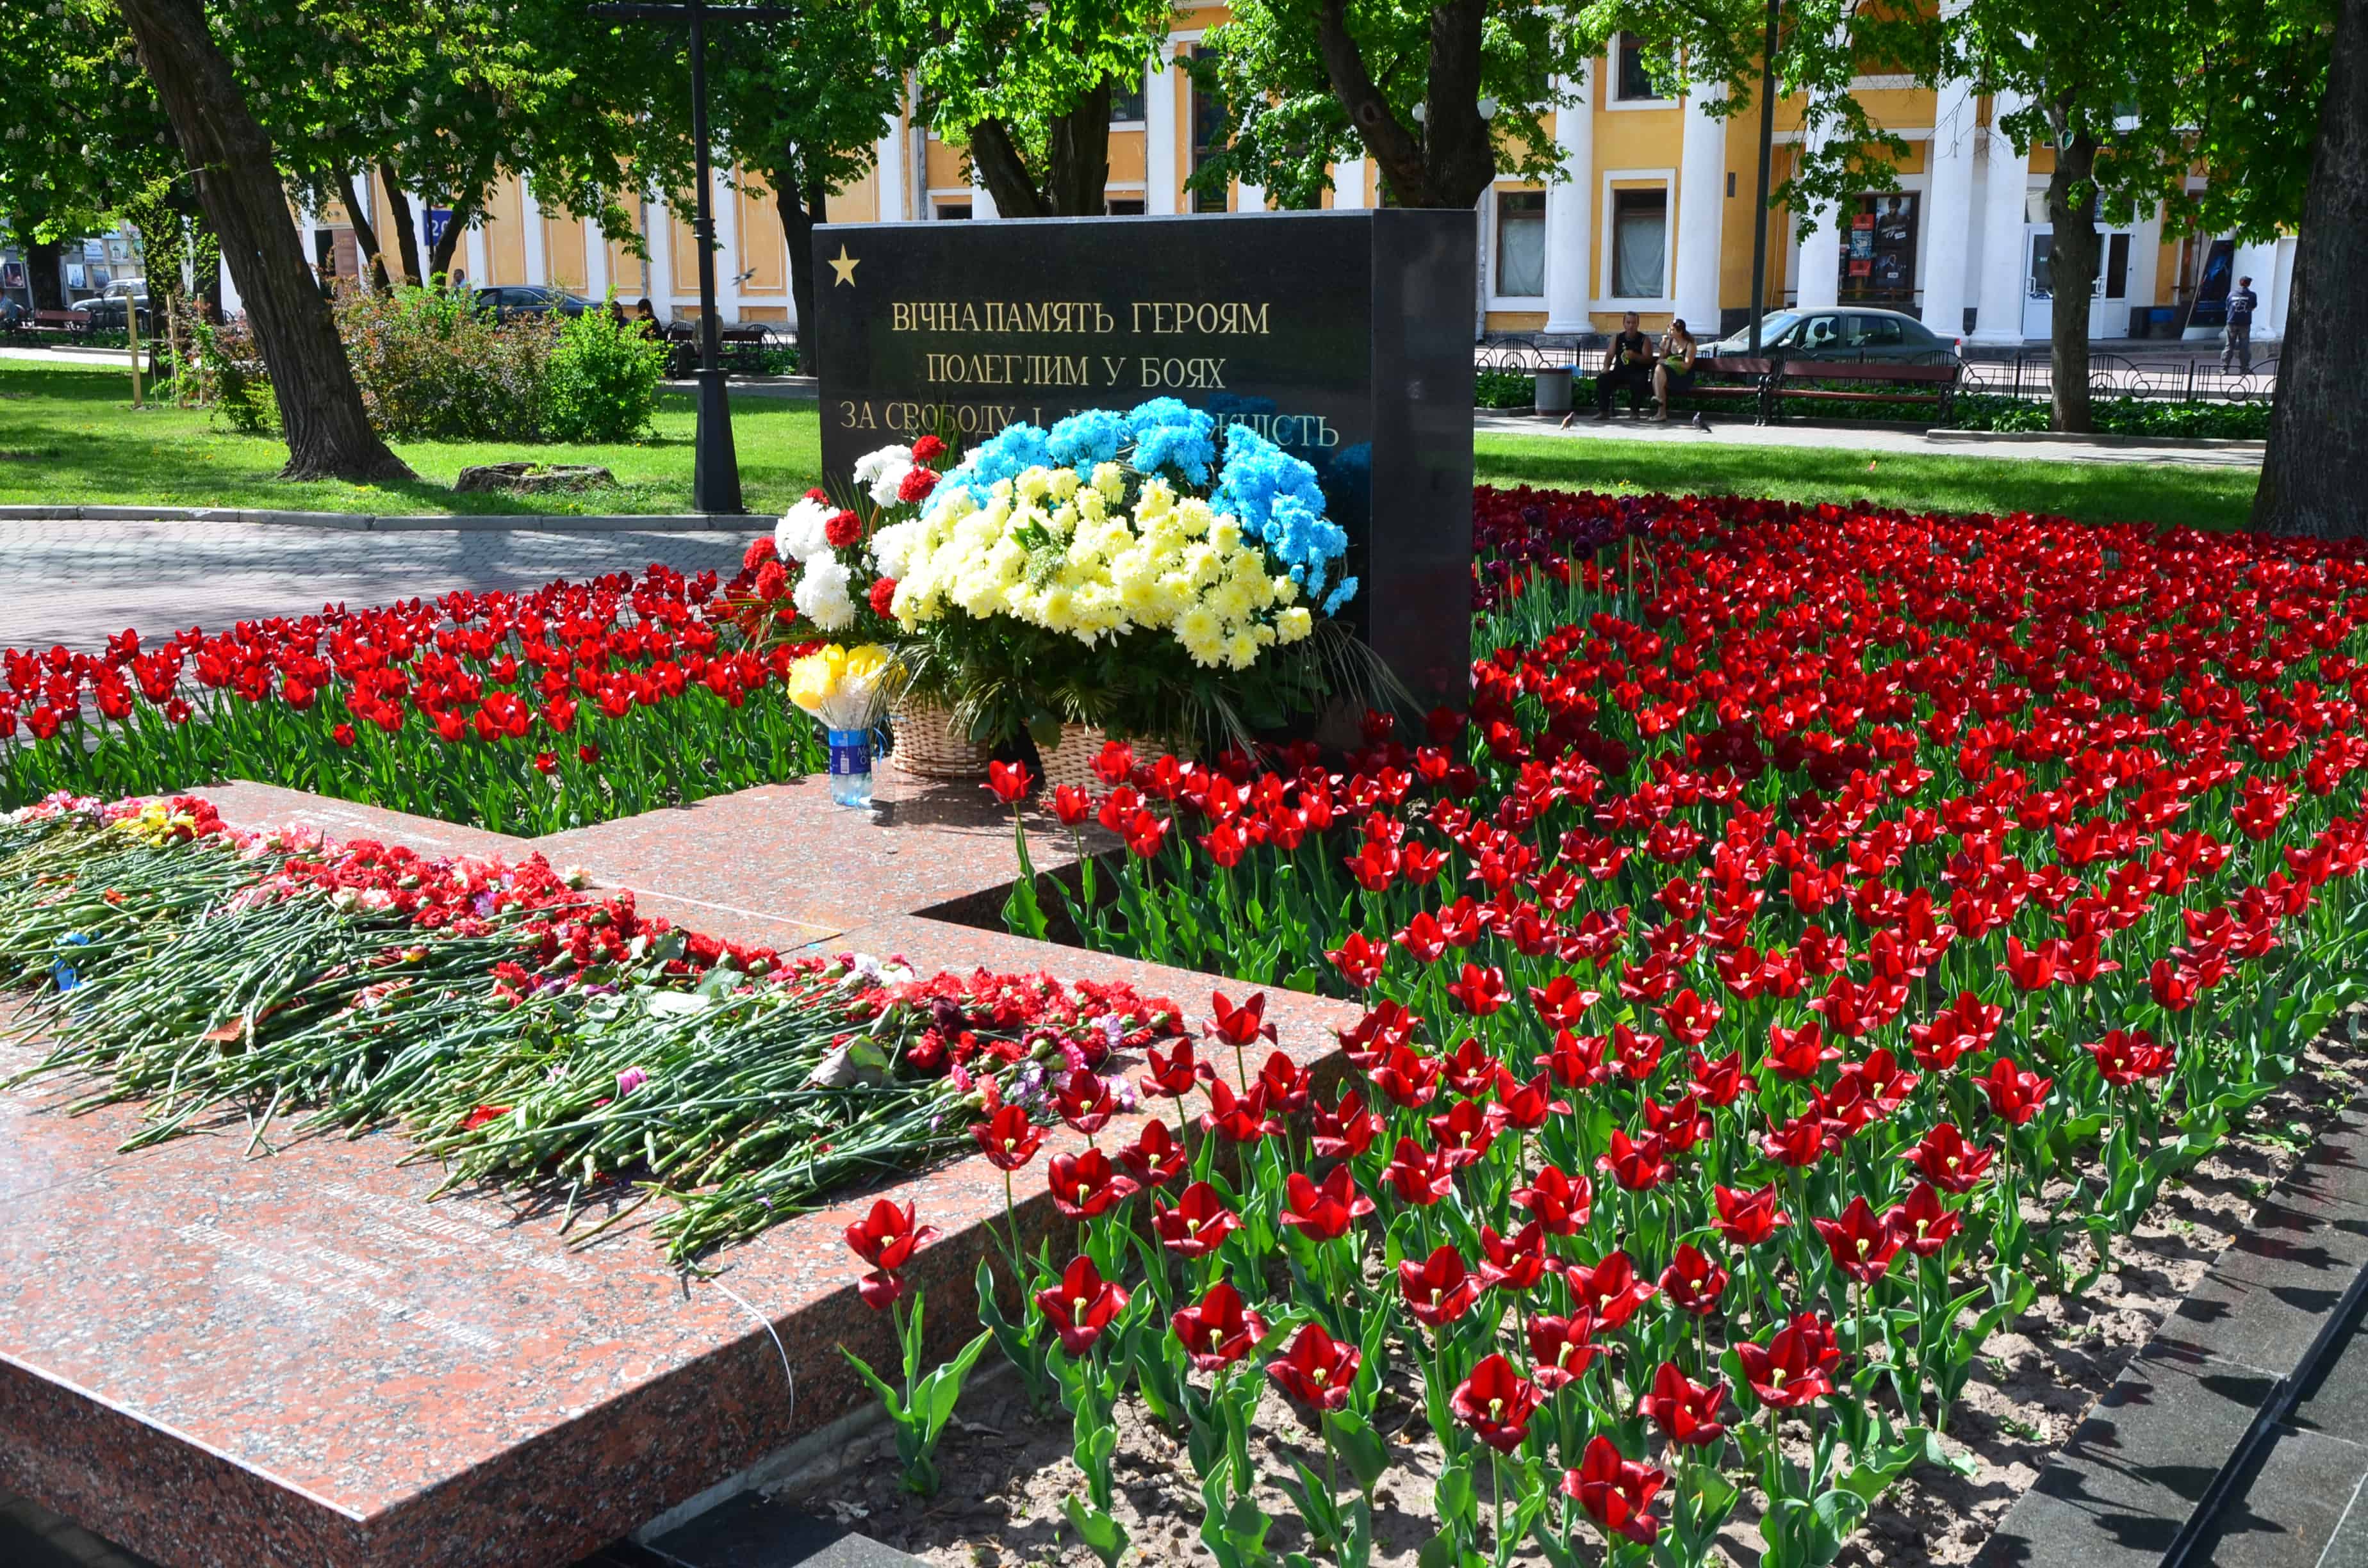 Mass grave of Soviet soldiers at Popudrenko Public Garden in Chernihiv, Ukraine